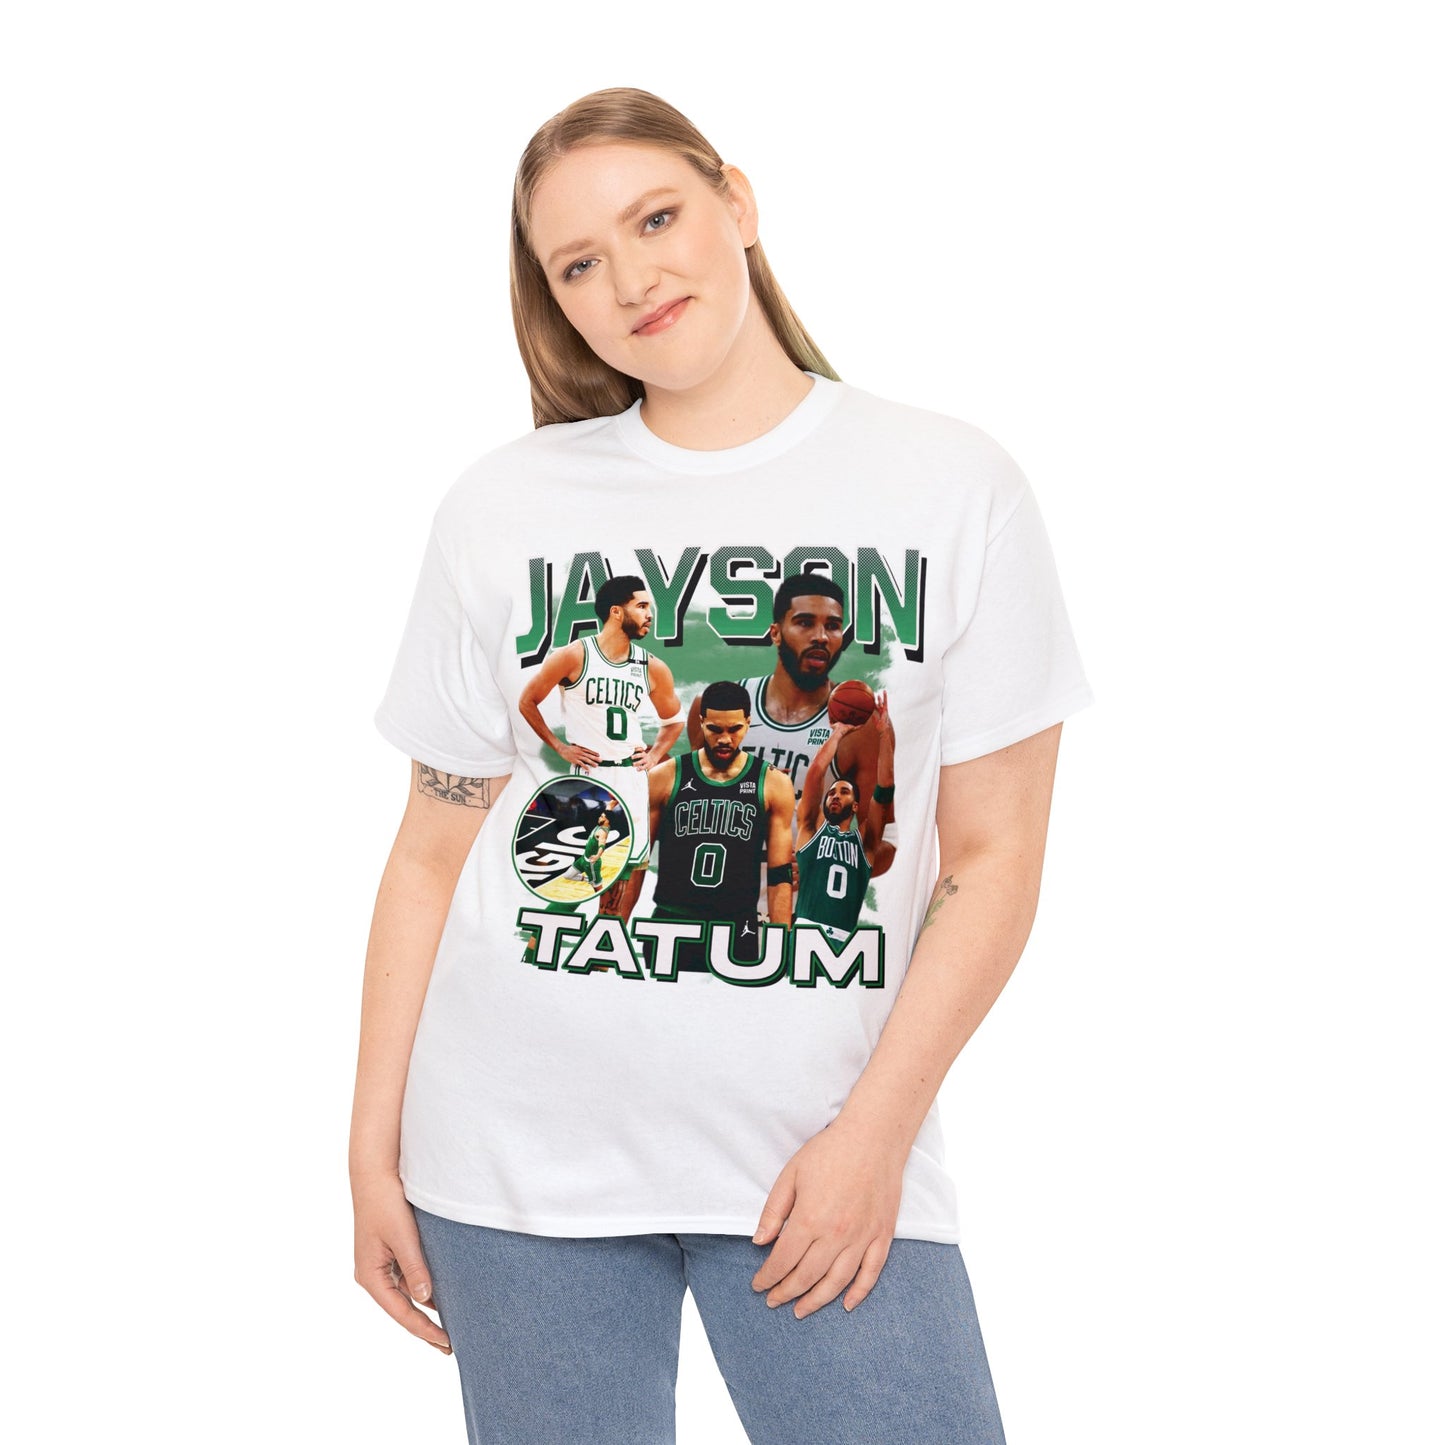 Jayson Tatum Boston Basketball All Star Unisex Heavy Cotton Tee